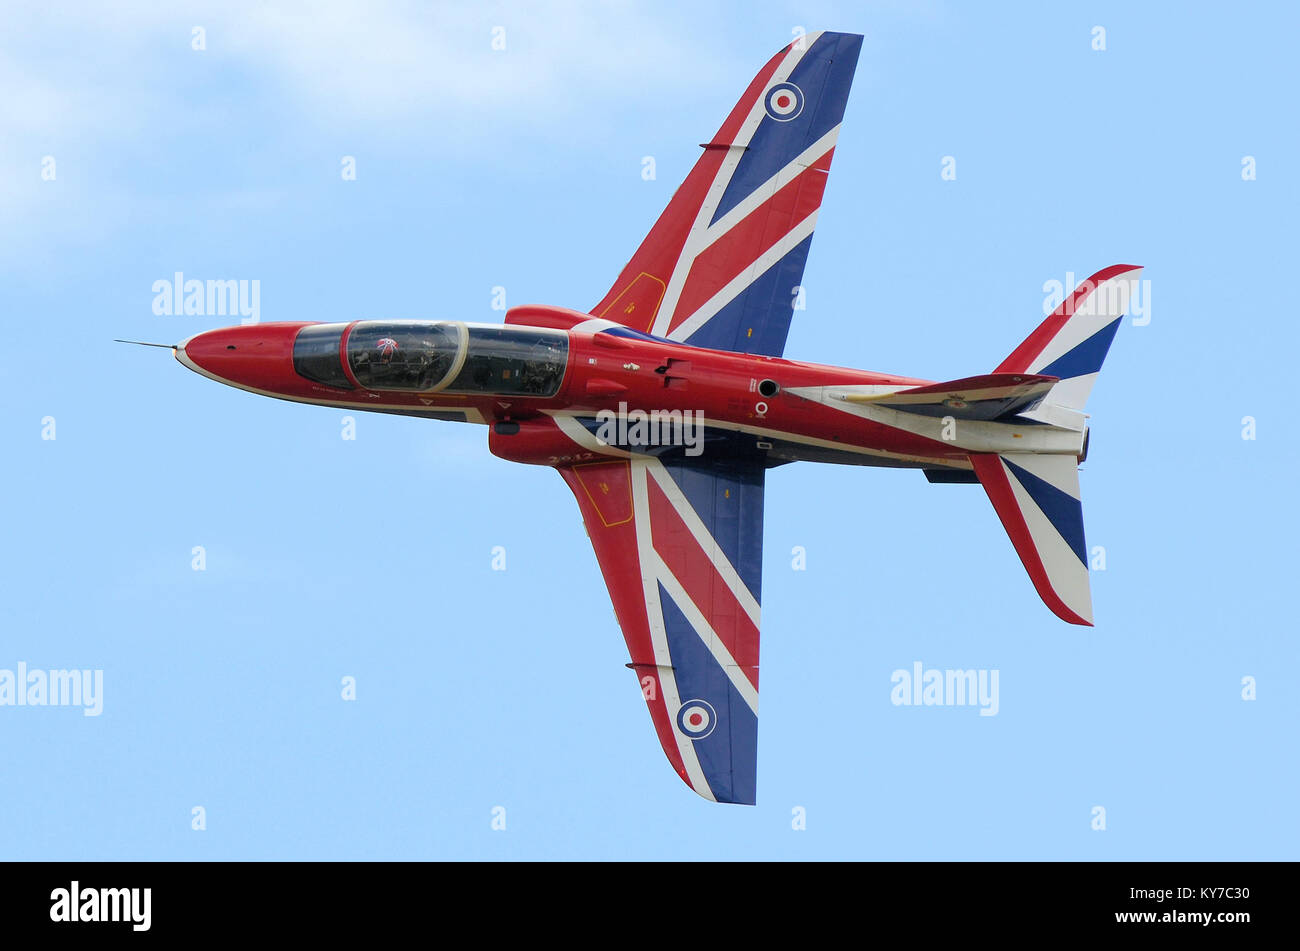 Royal Air Force BAe Hawk T1 mostra aereo da solista jet trainer in speciale bandiera sindacale o Union jack British schema colore. Bandiera rossa bianca e blu Foto Stock